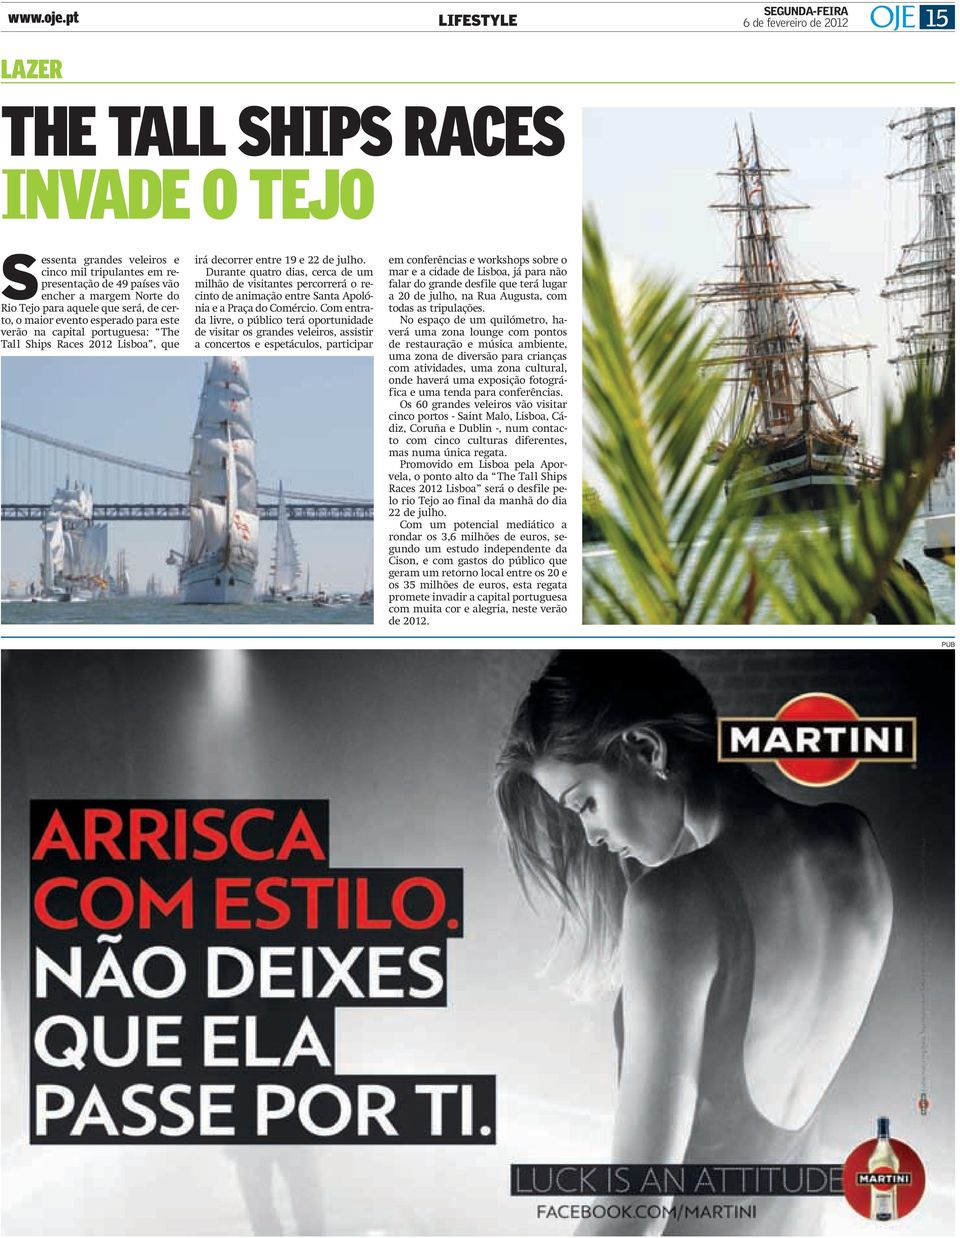 para aquele que será, de certo, o maior evento esperado para este verão na capital portuguesa: The Tall Ships Races 2012 Lisboa, que irá decorrer entre 19 e 22 de julho.